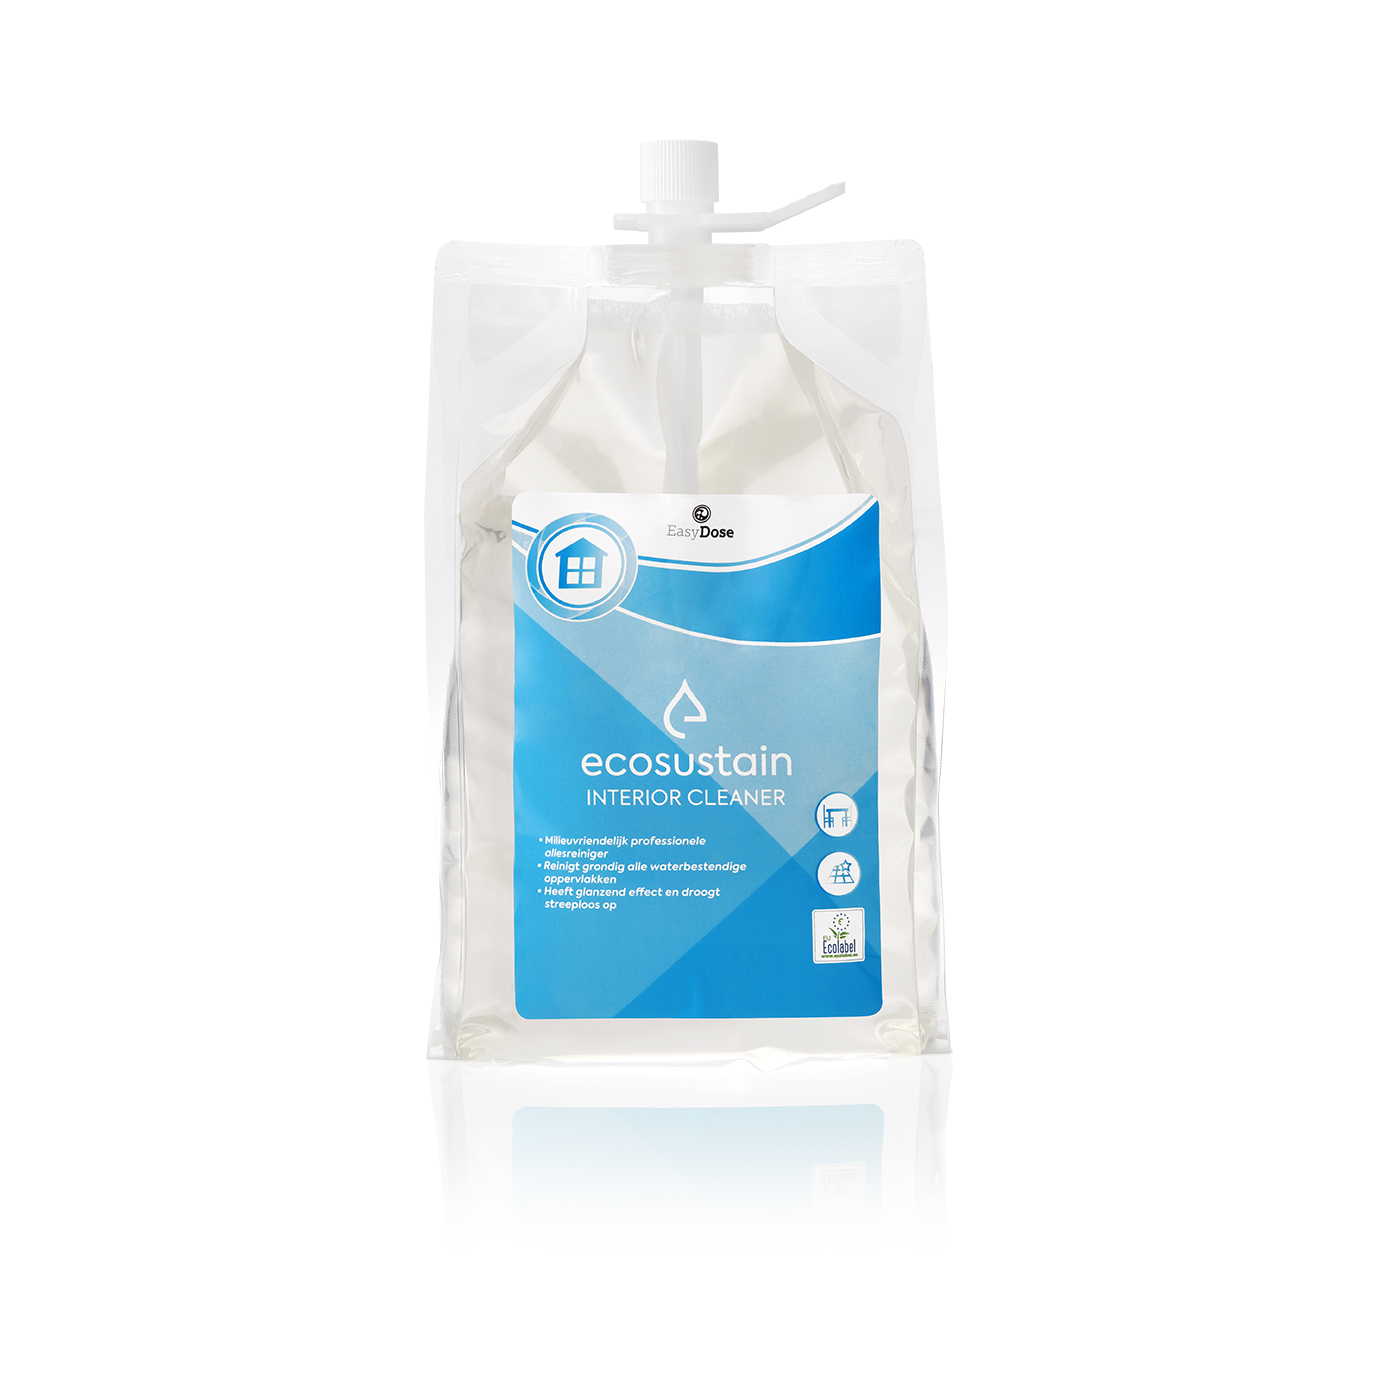 101060-05 Ecosustain Interior Cleaner 1,8 liter pouch (10)